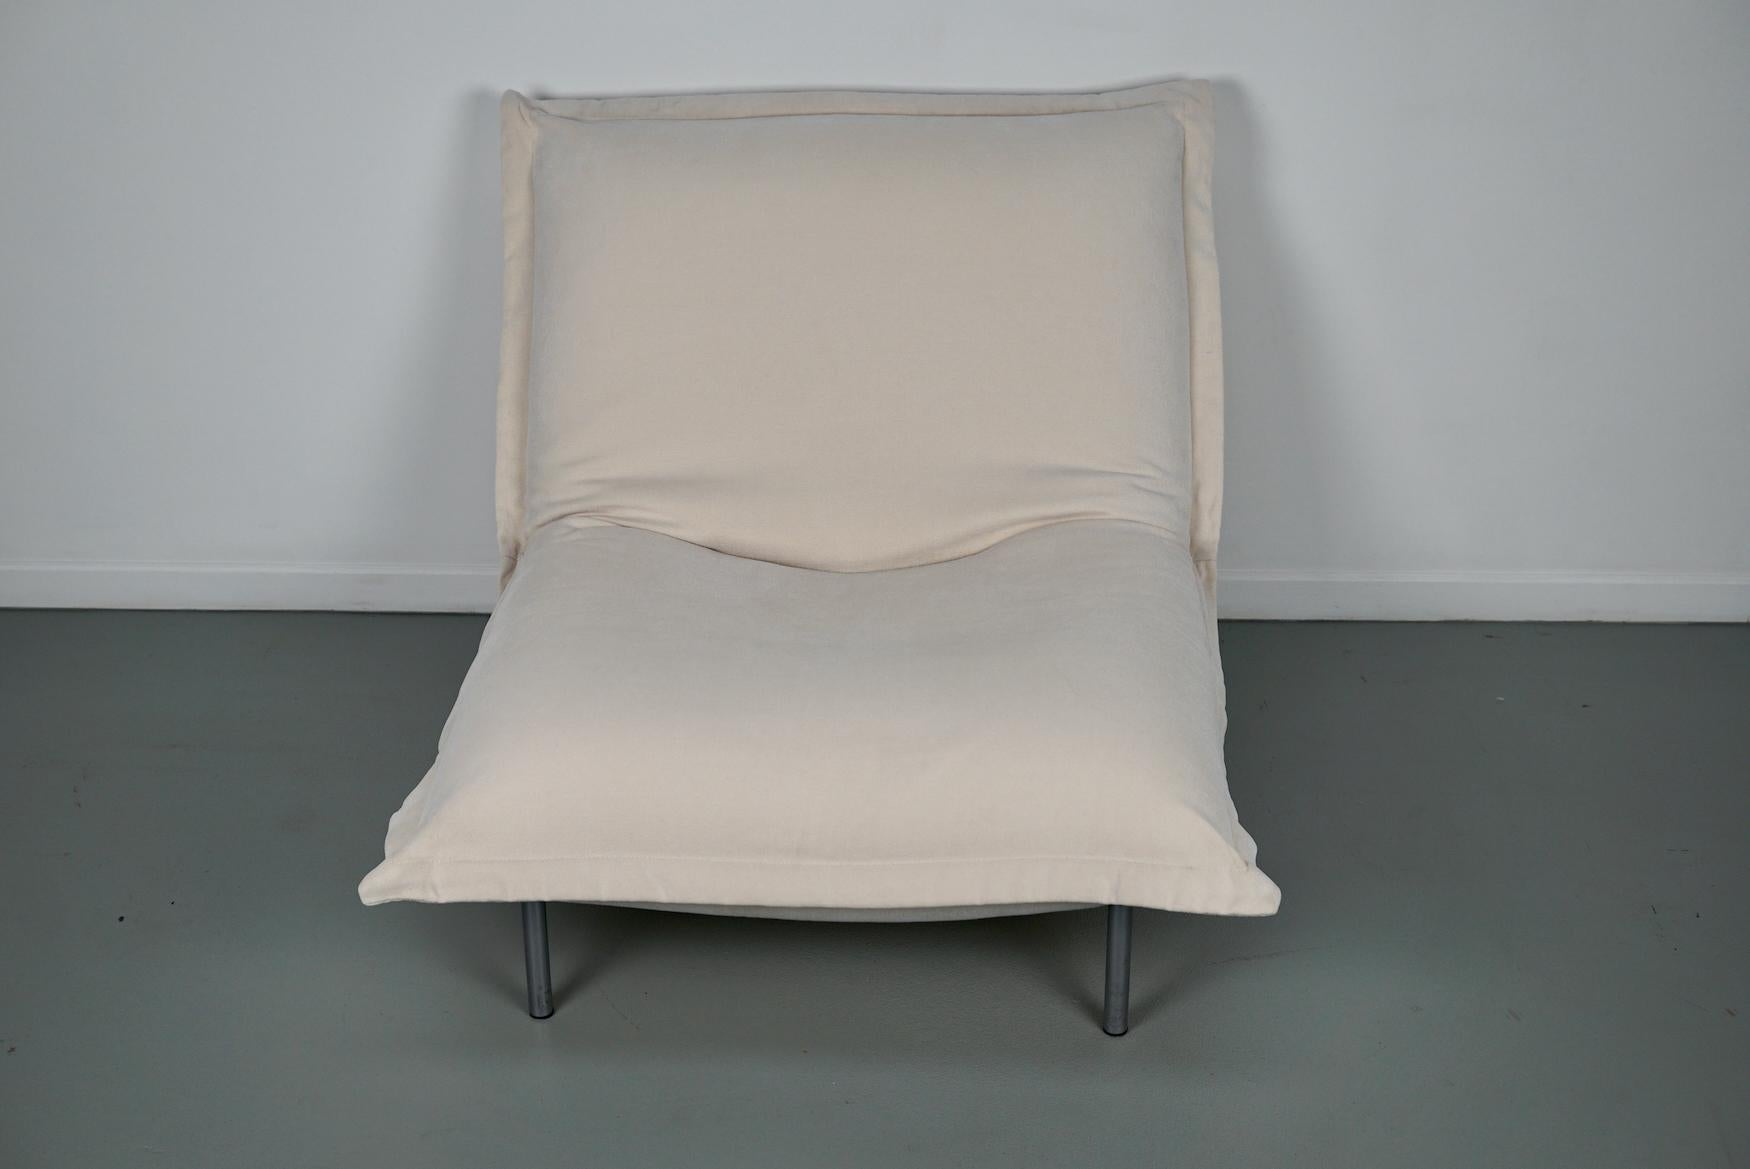 Calin Corner Sofa Set by Pascal Mourgue for Cinna / Ligne Roset - 4 seater 11